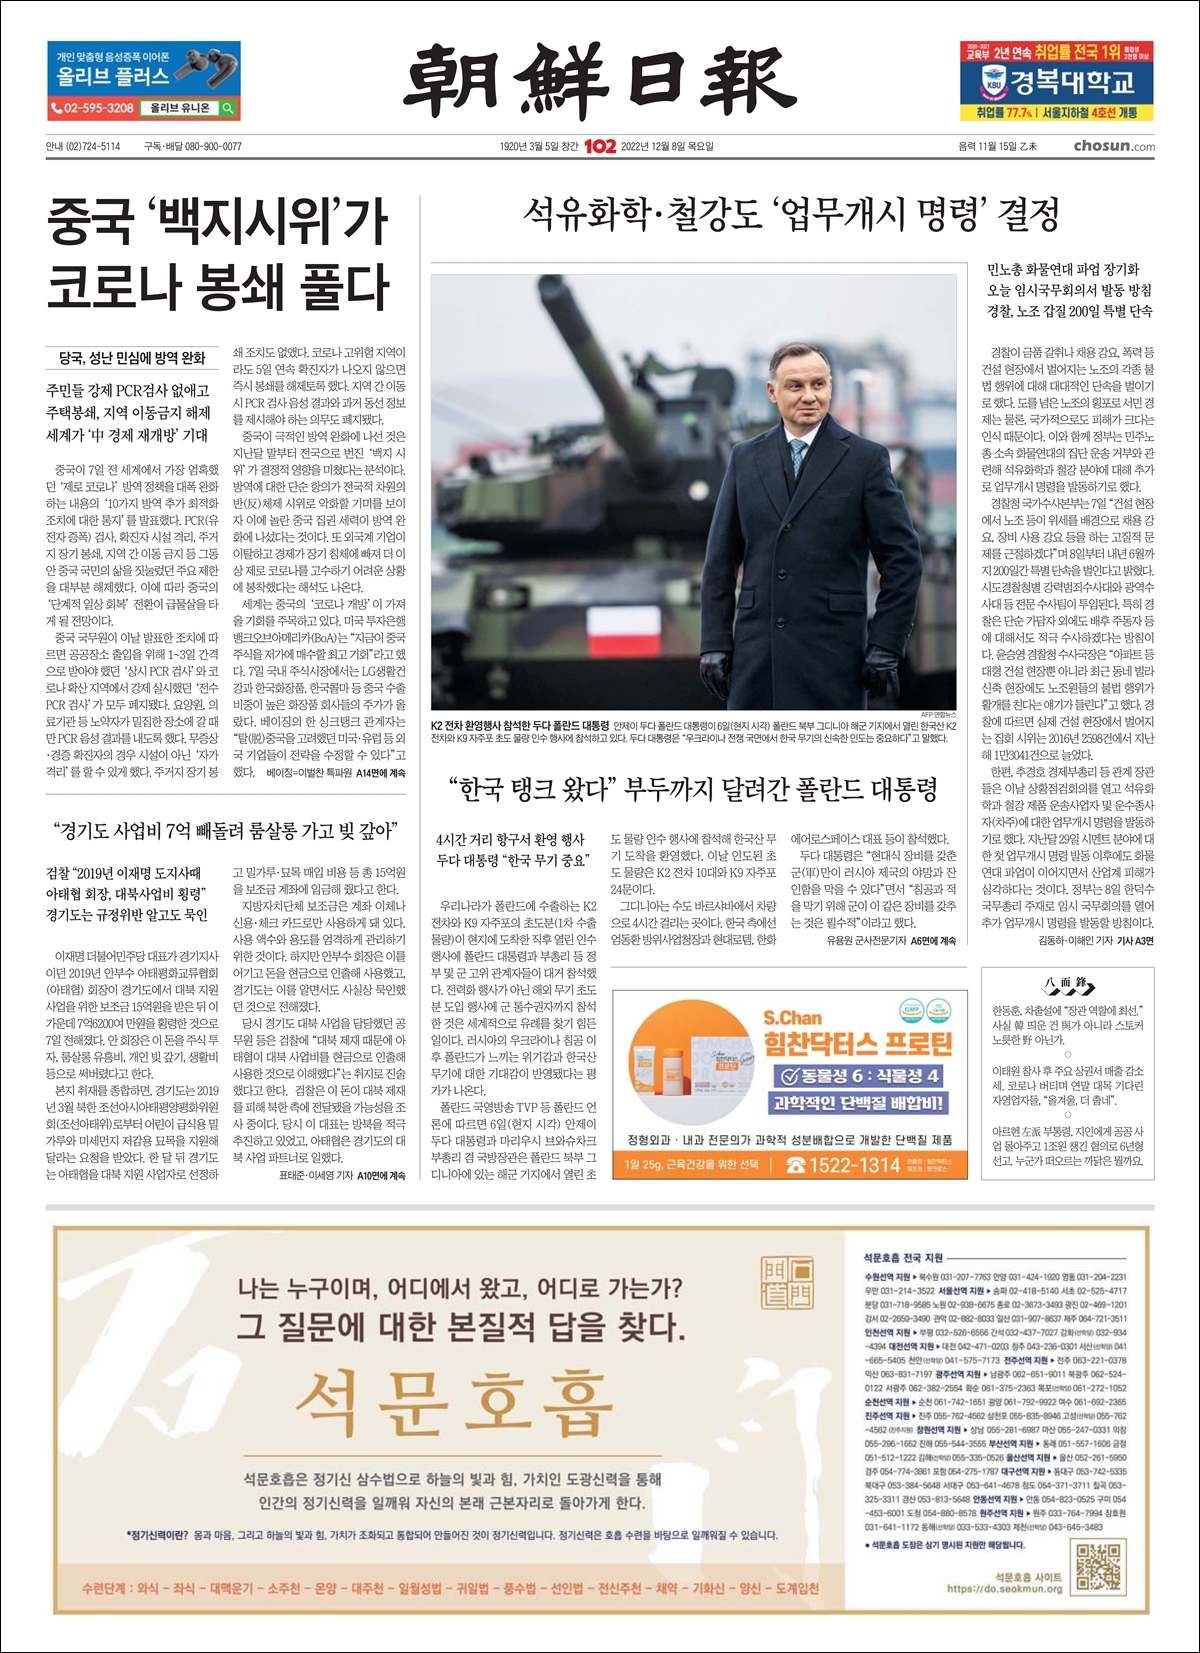 2022년 12월 8일 조선일보 1면에 석문호흡 광고가 나갔습니다. 조선일보 1면 전체를 그림파일로 만들어 올립니다.